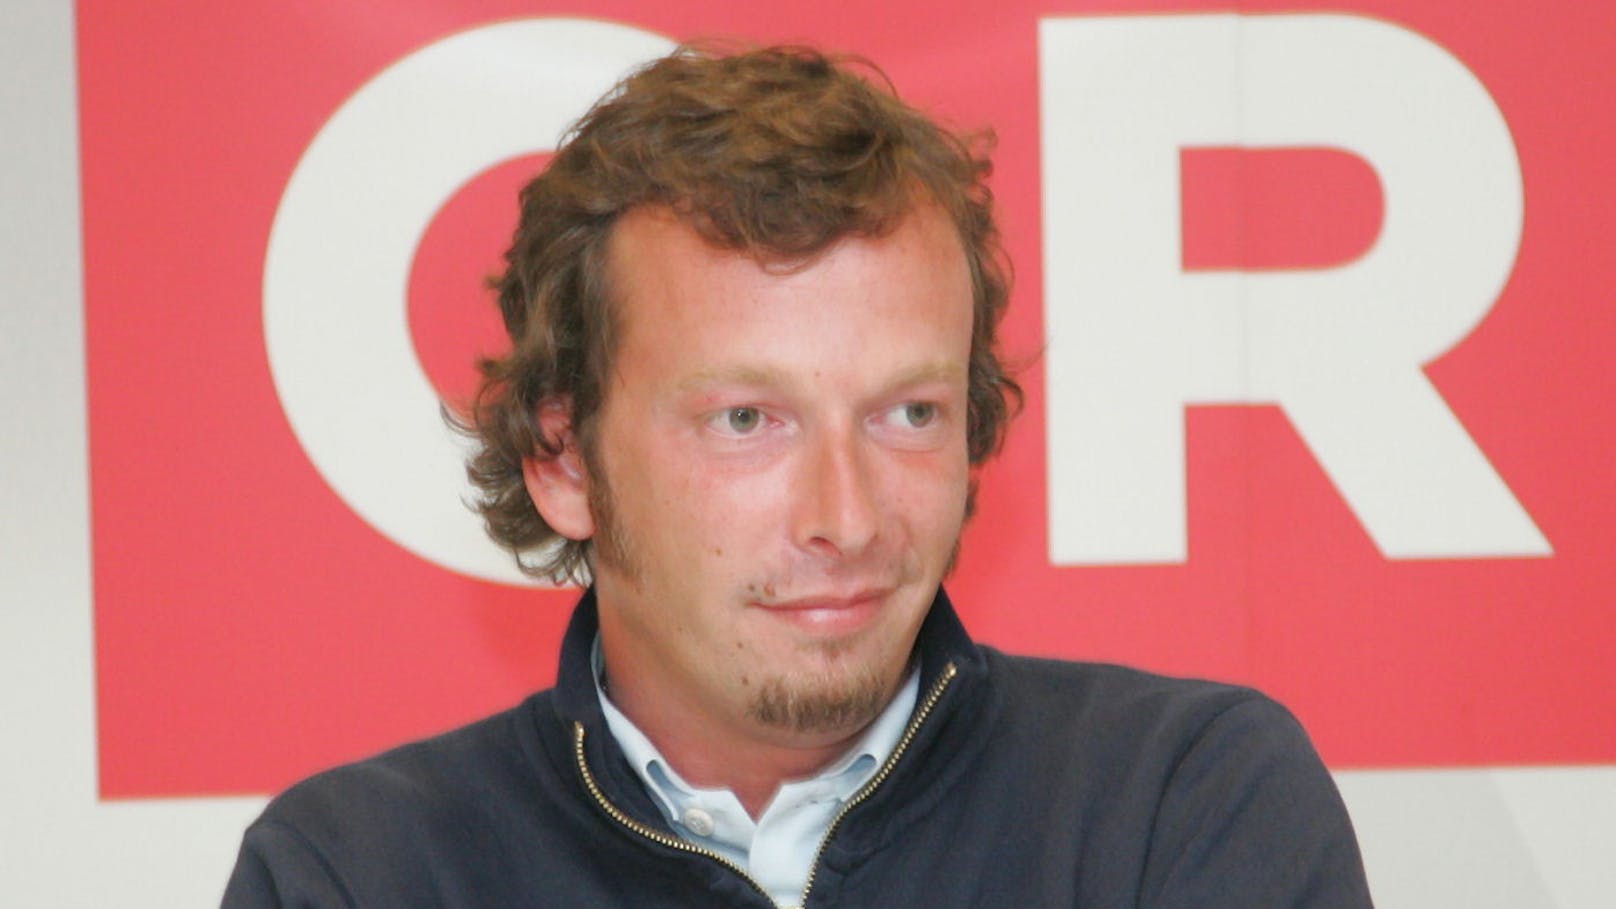 Kratky bei einer Pressekonferenz zu seiner ORF-Sendung "Österreichs schlechtester Autofahrer" im Jahr 2007.